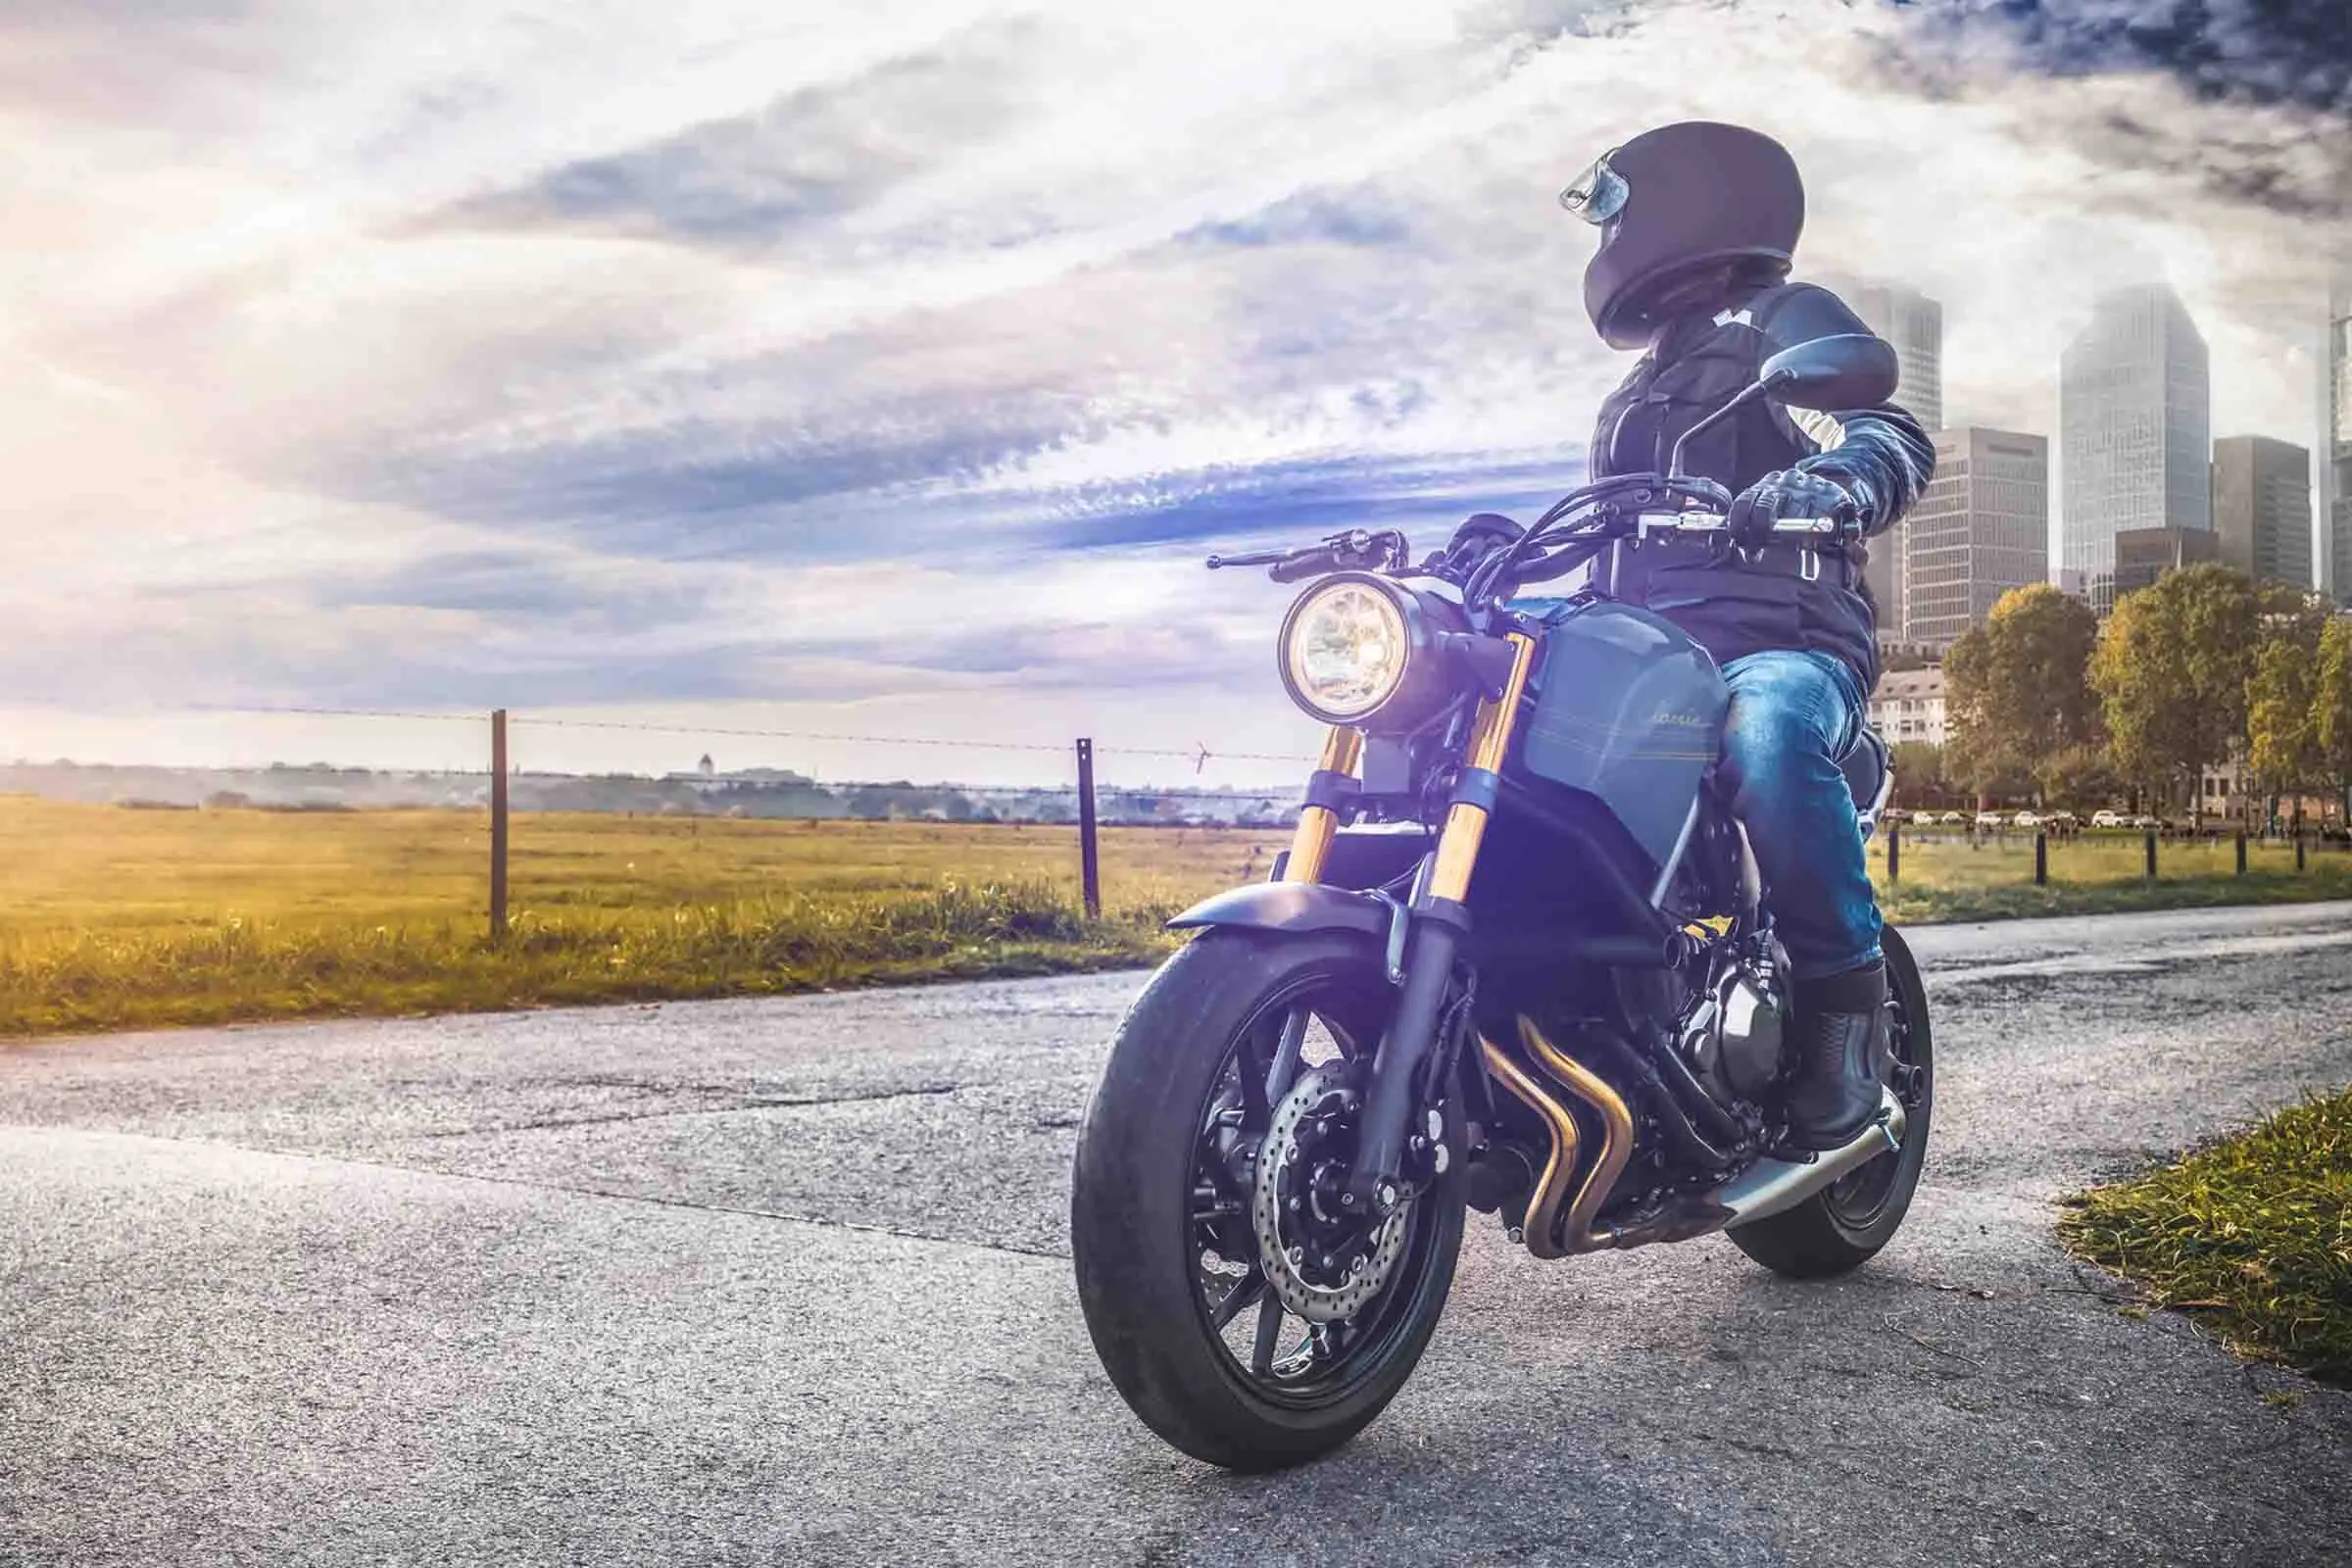 seguros de moto por meses - Cuánto cuesta el seguro de una moto de 250cc